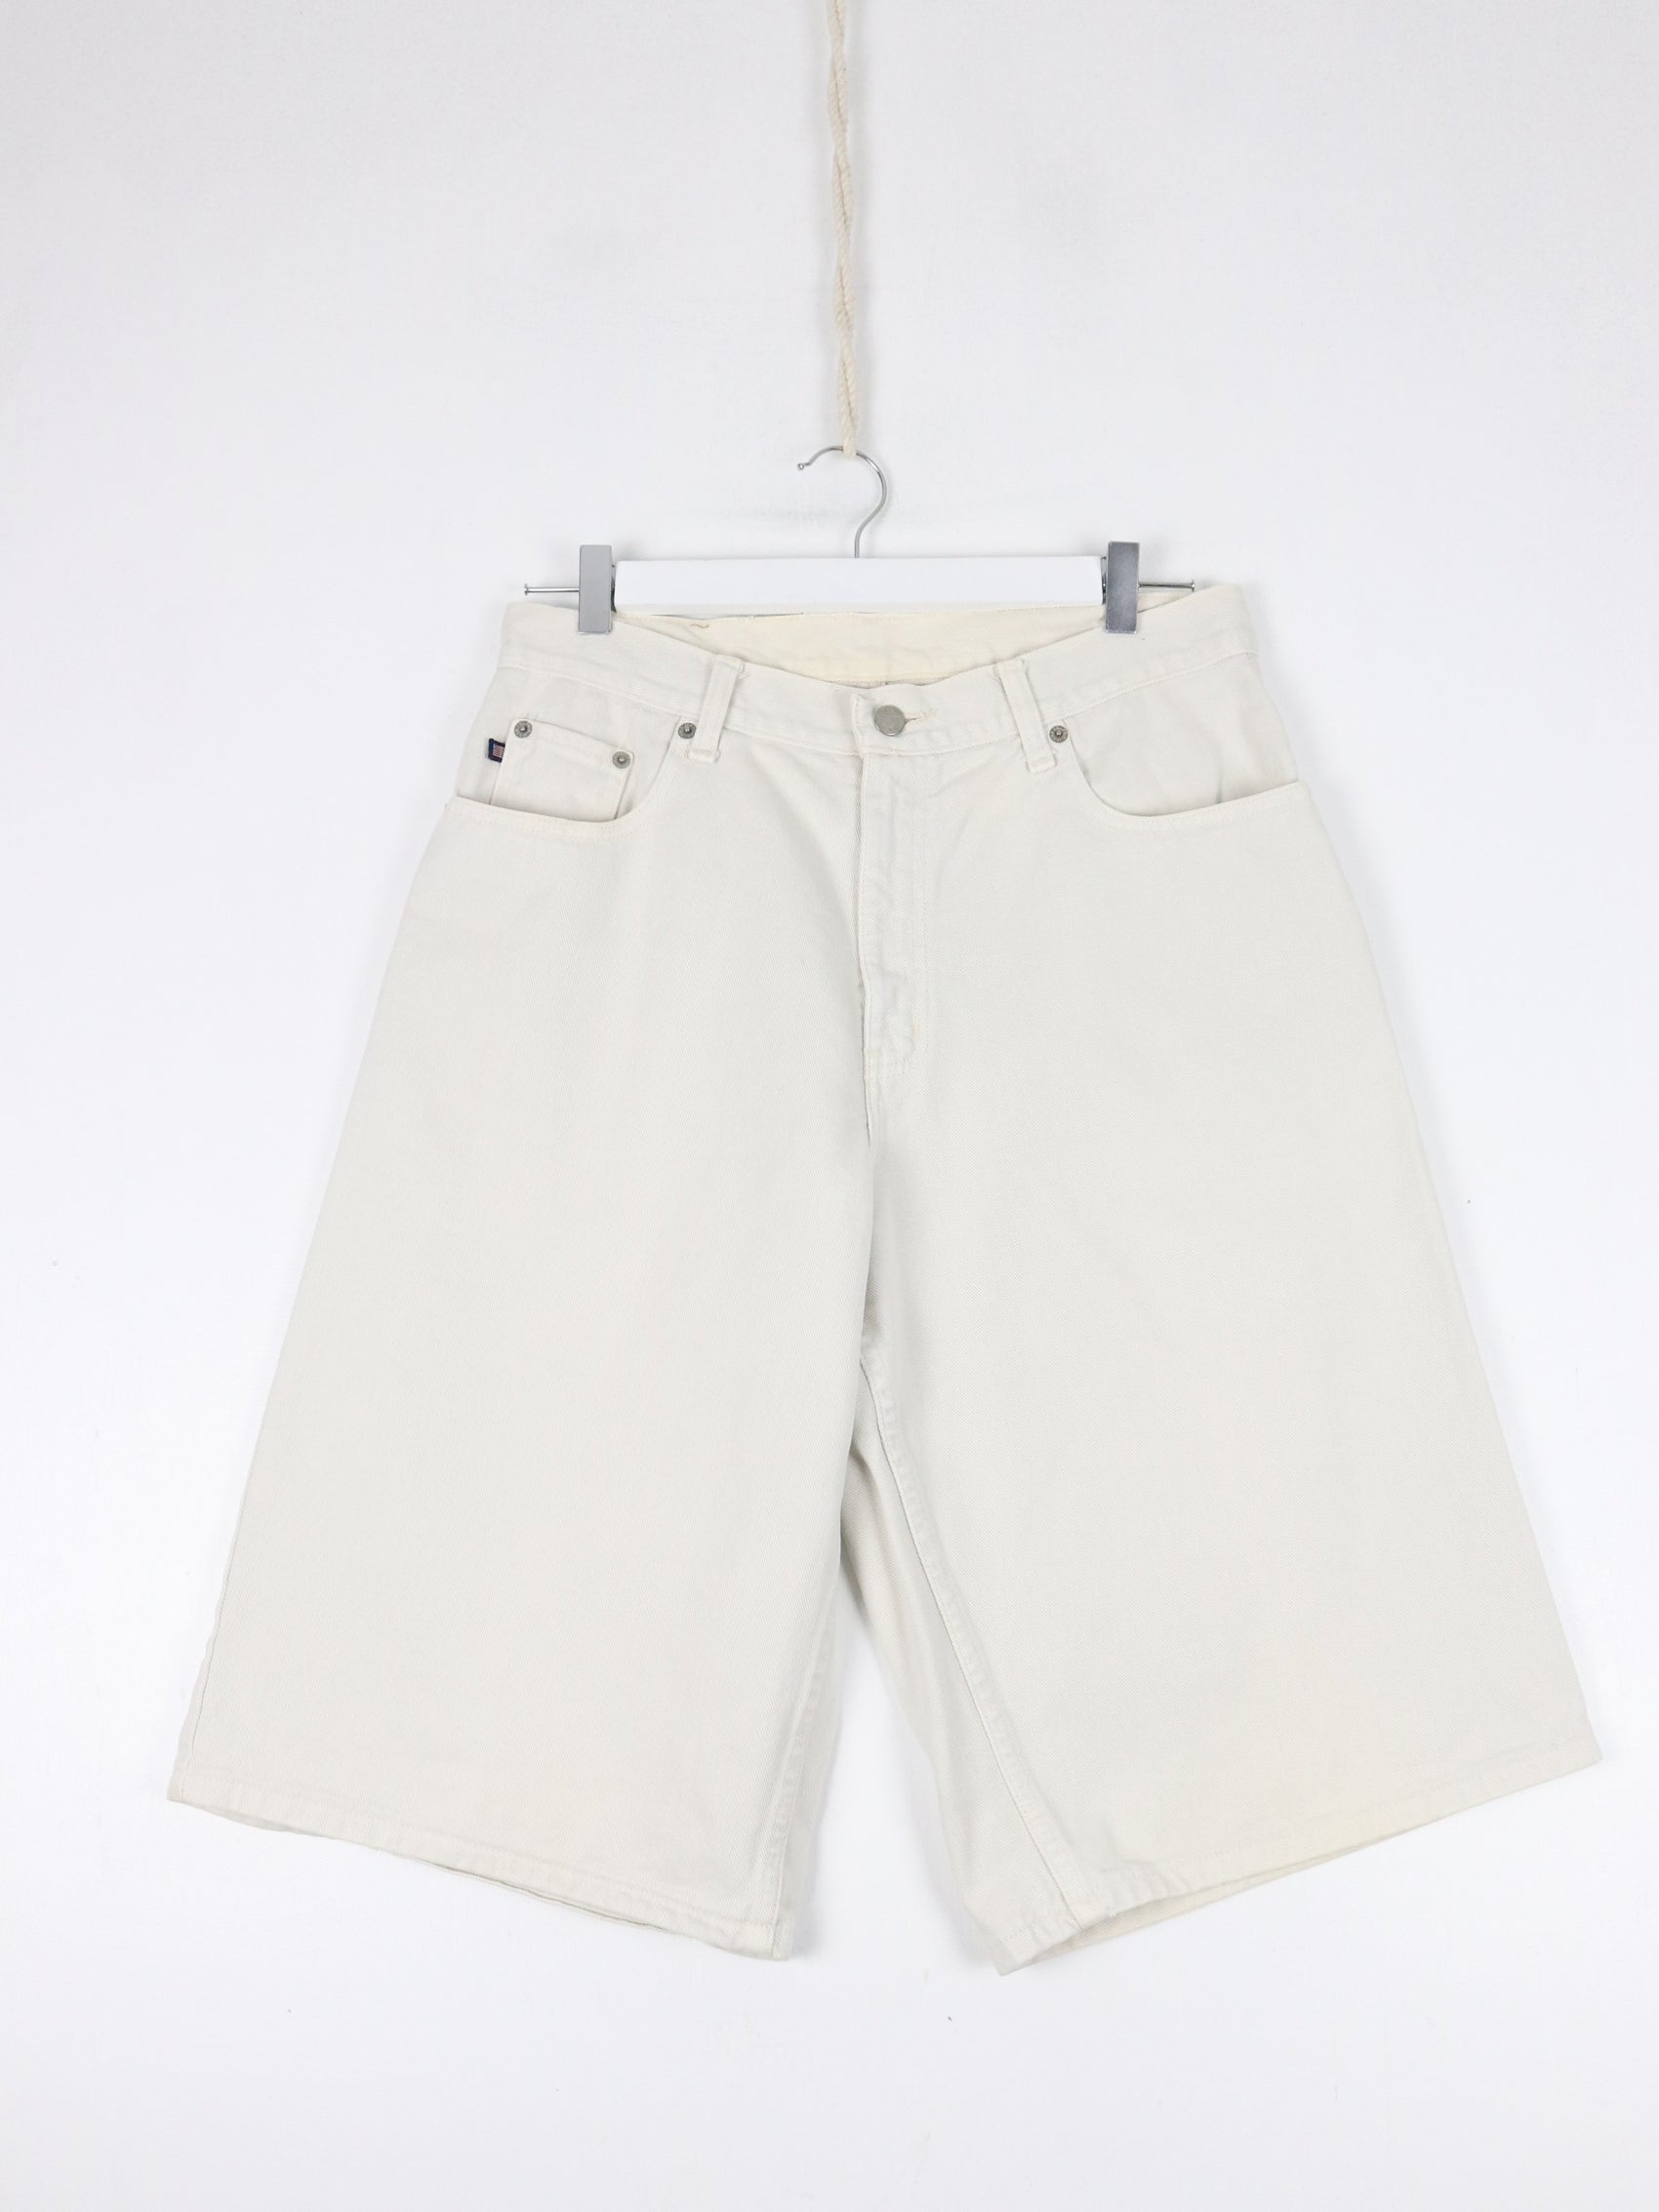 Vintage Polo Jeans Co Ralph Lauren Shorts Mens 31 Beige Denim